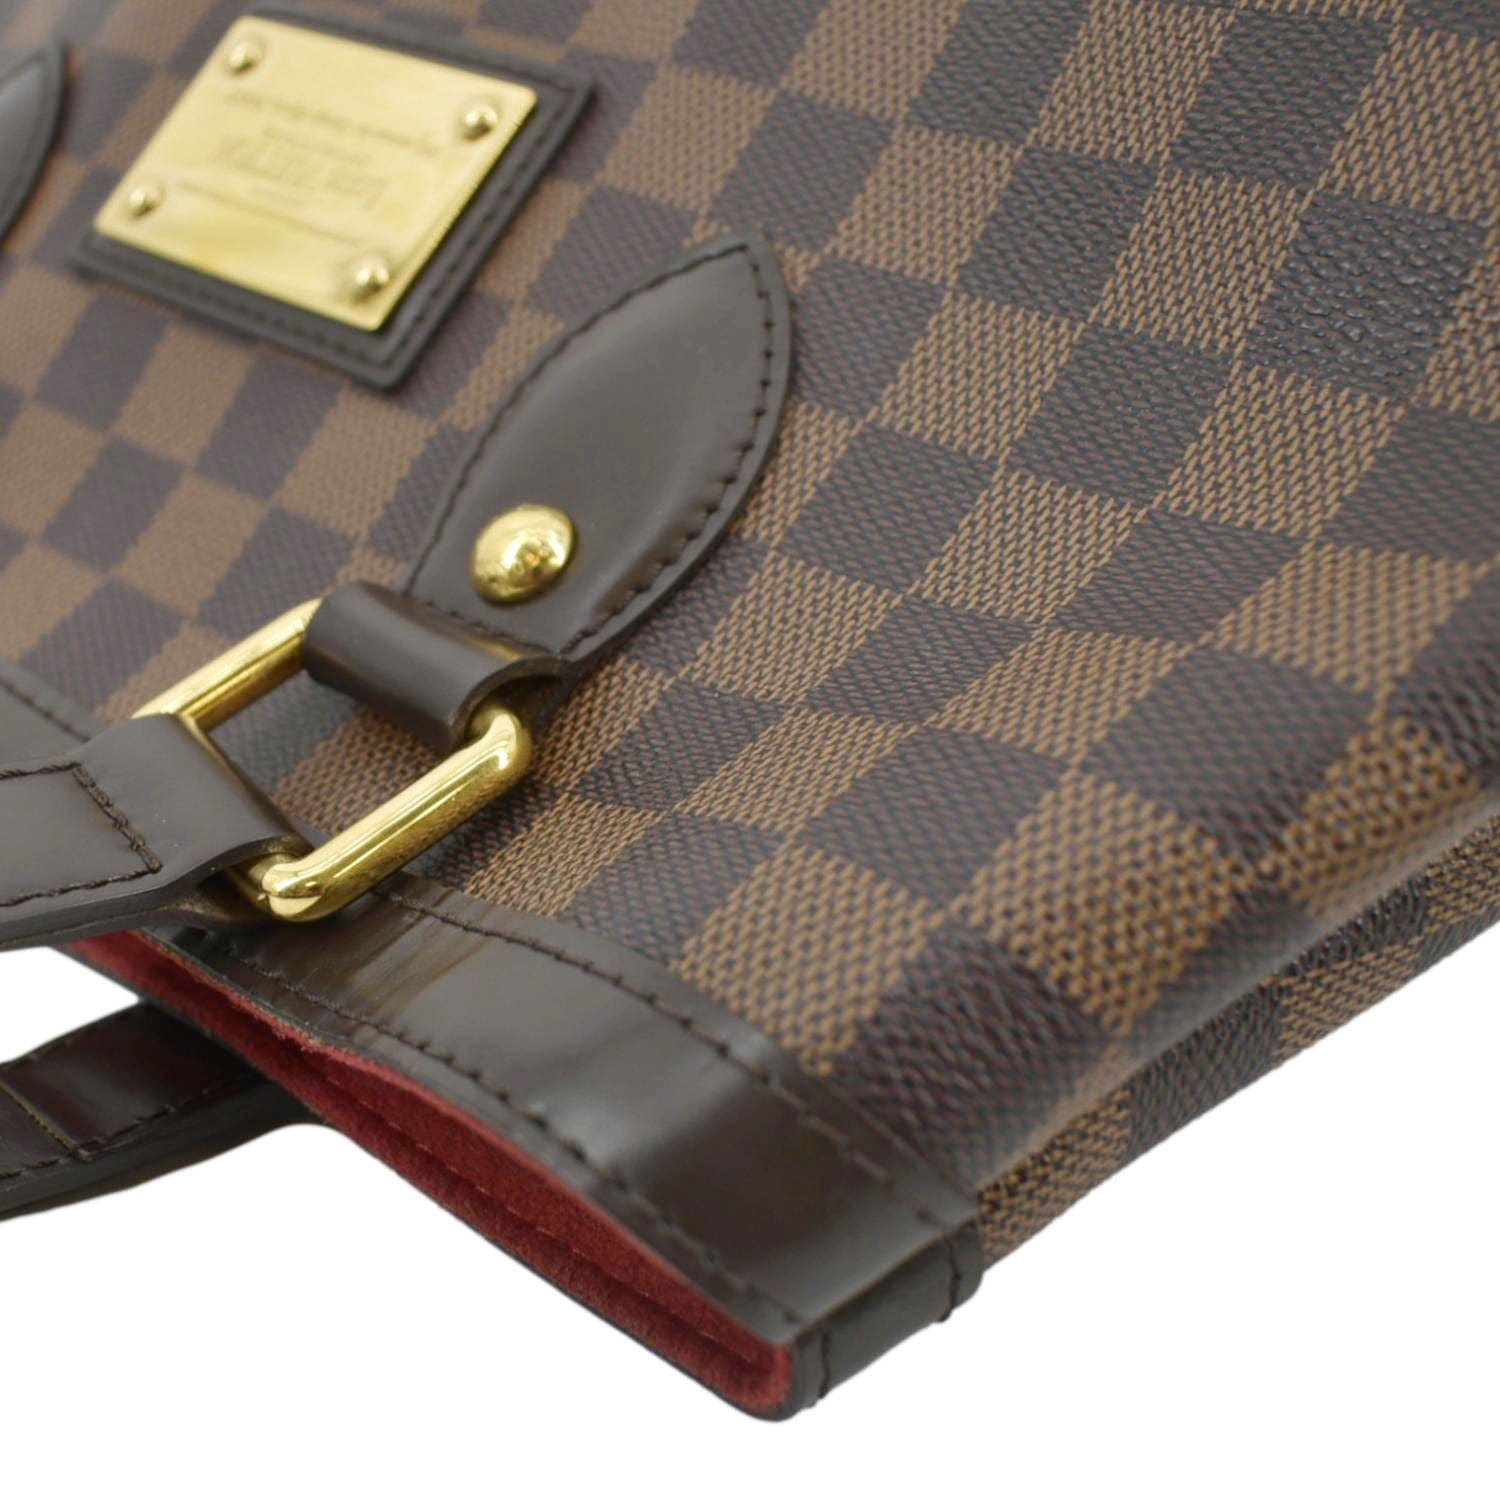 Louis Vuitton Damier Ebene Canvas Leather Hampstead MM Bag